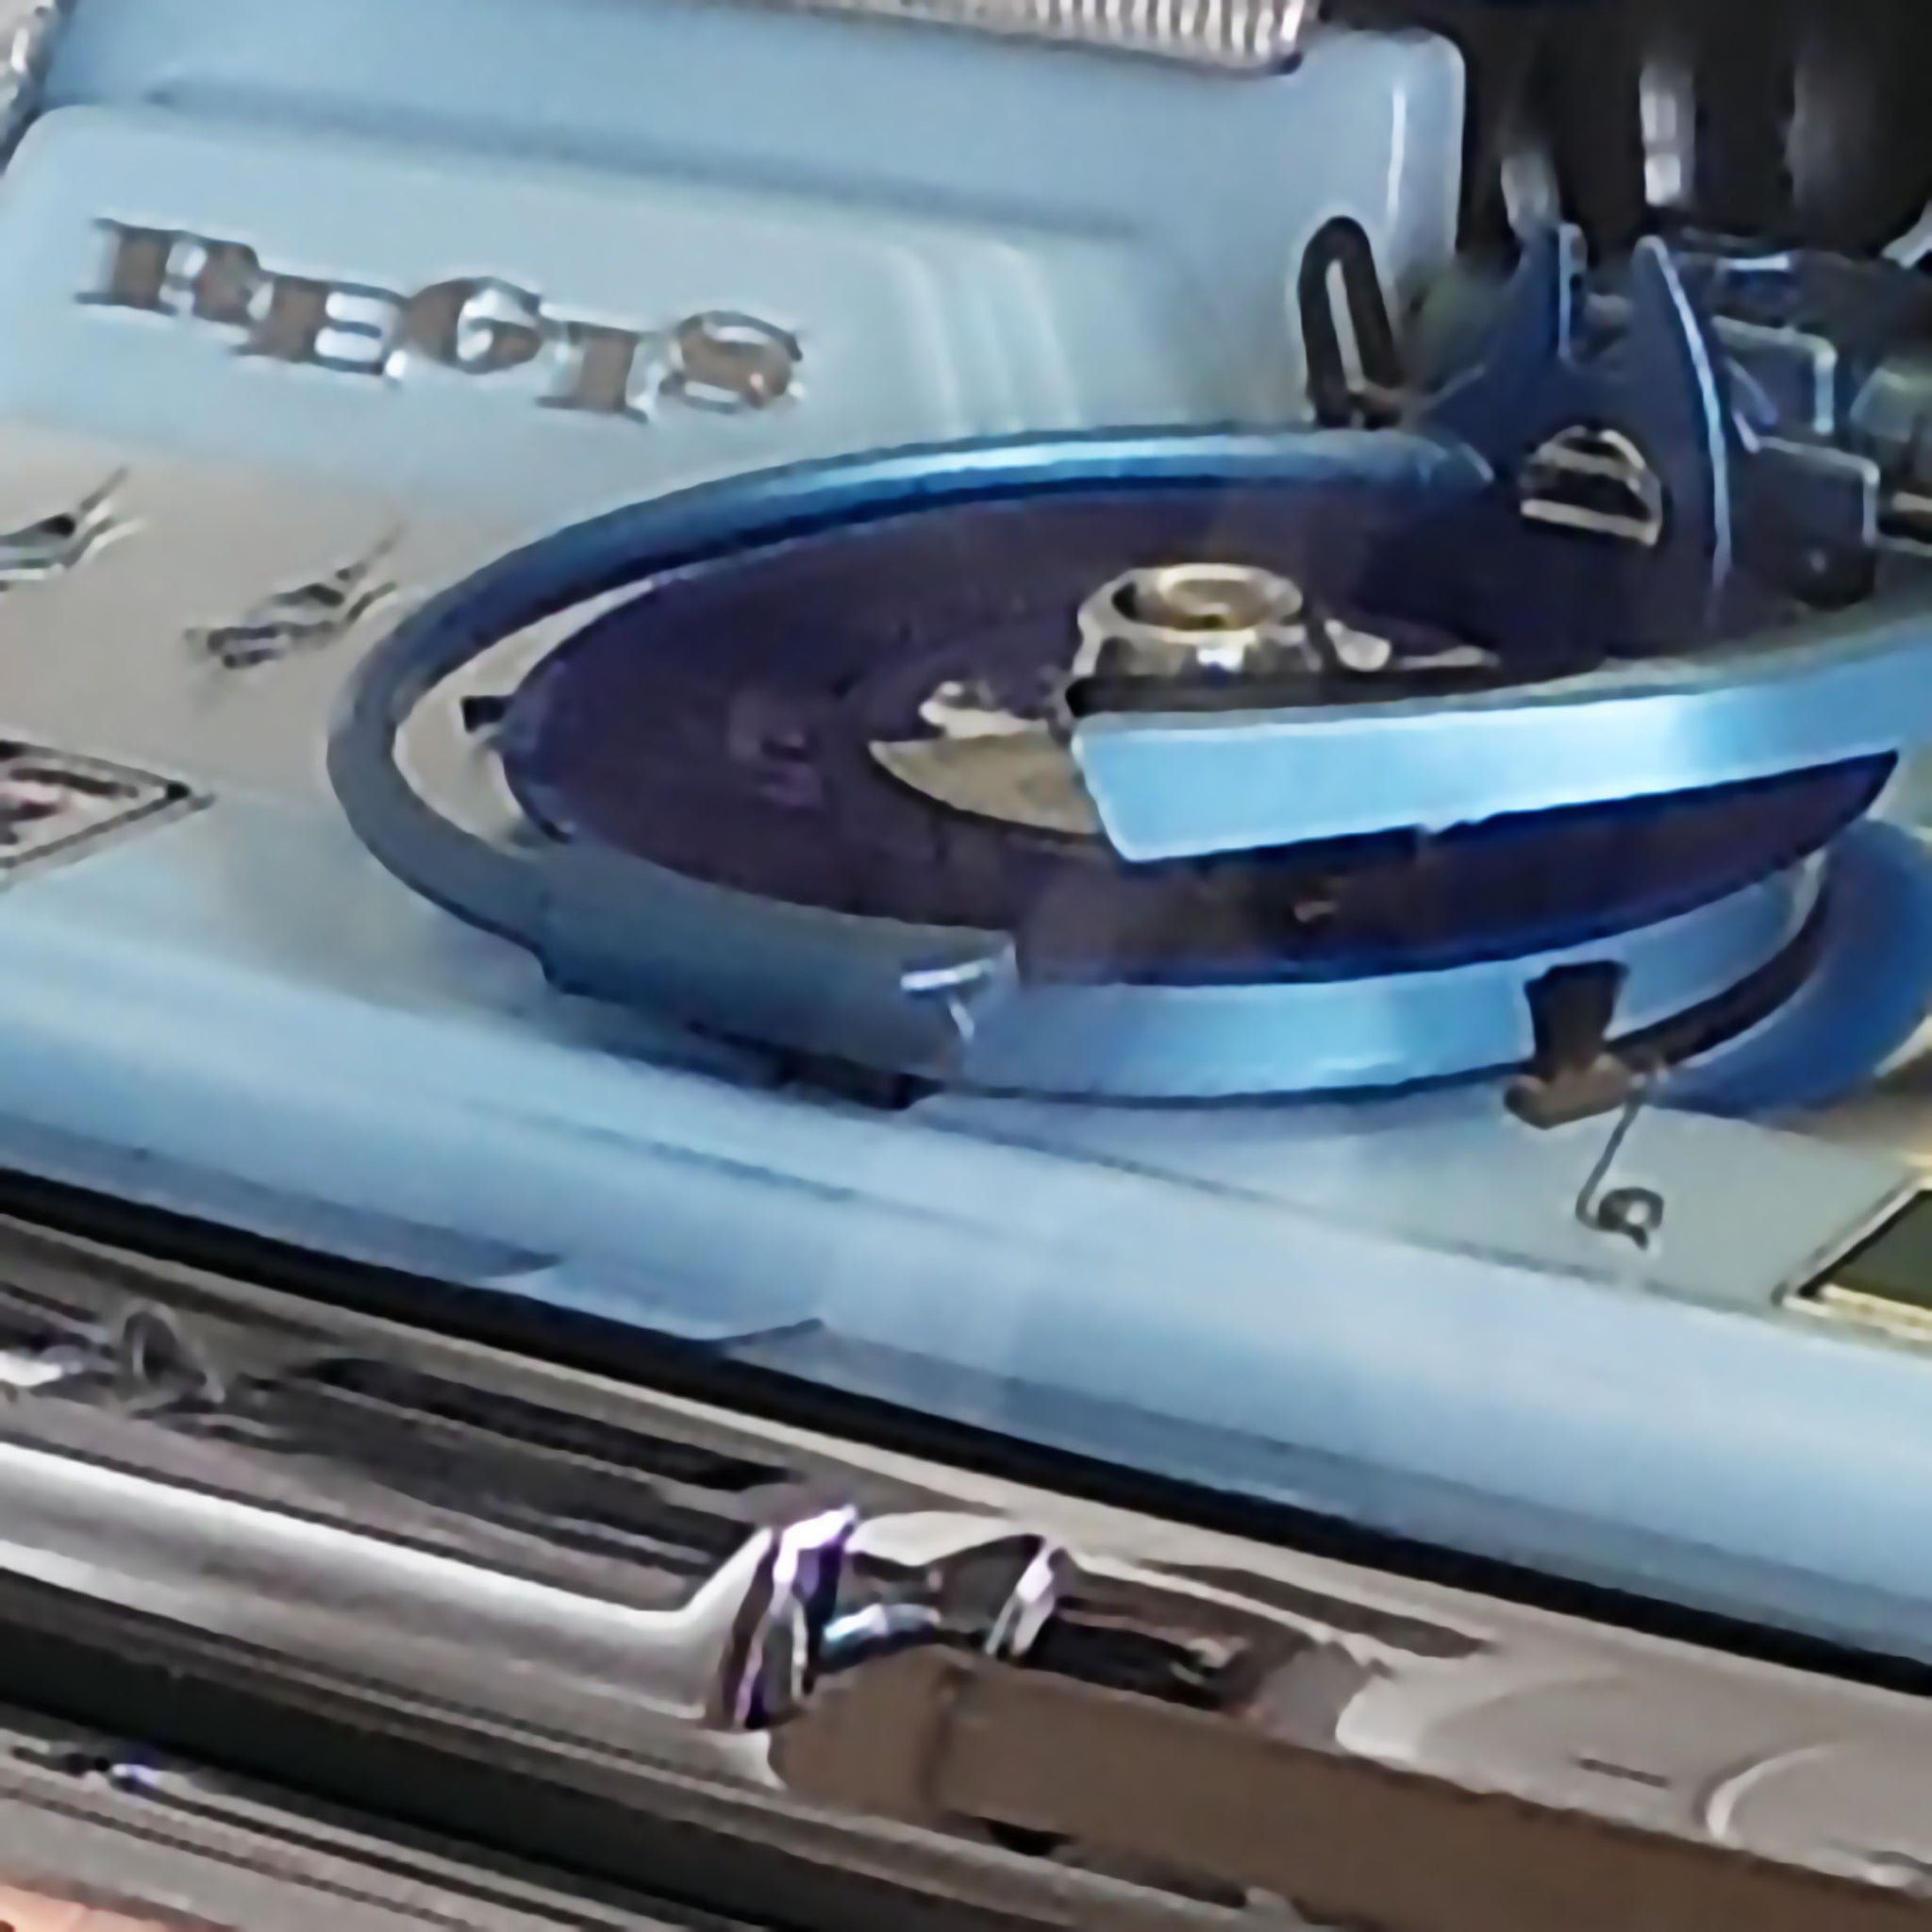 Original 1961 Rock-Ola Regis 1495 Jukebox